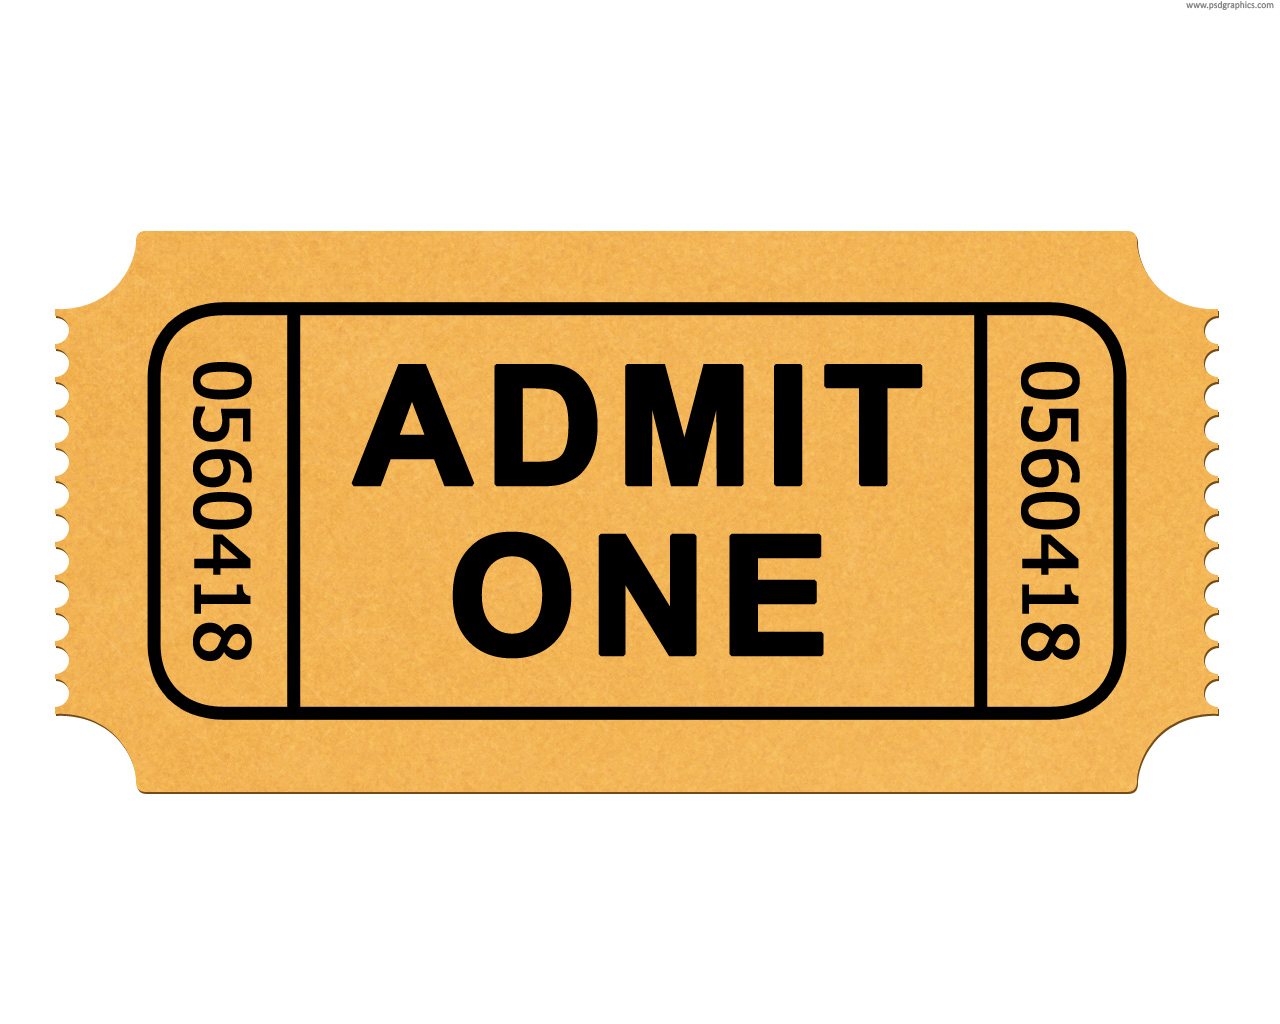 cinema clipart movie ticket